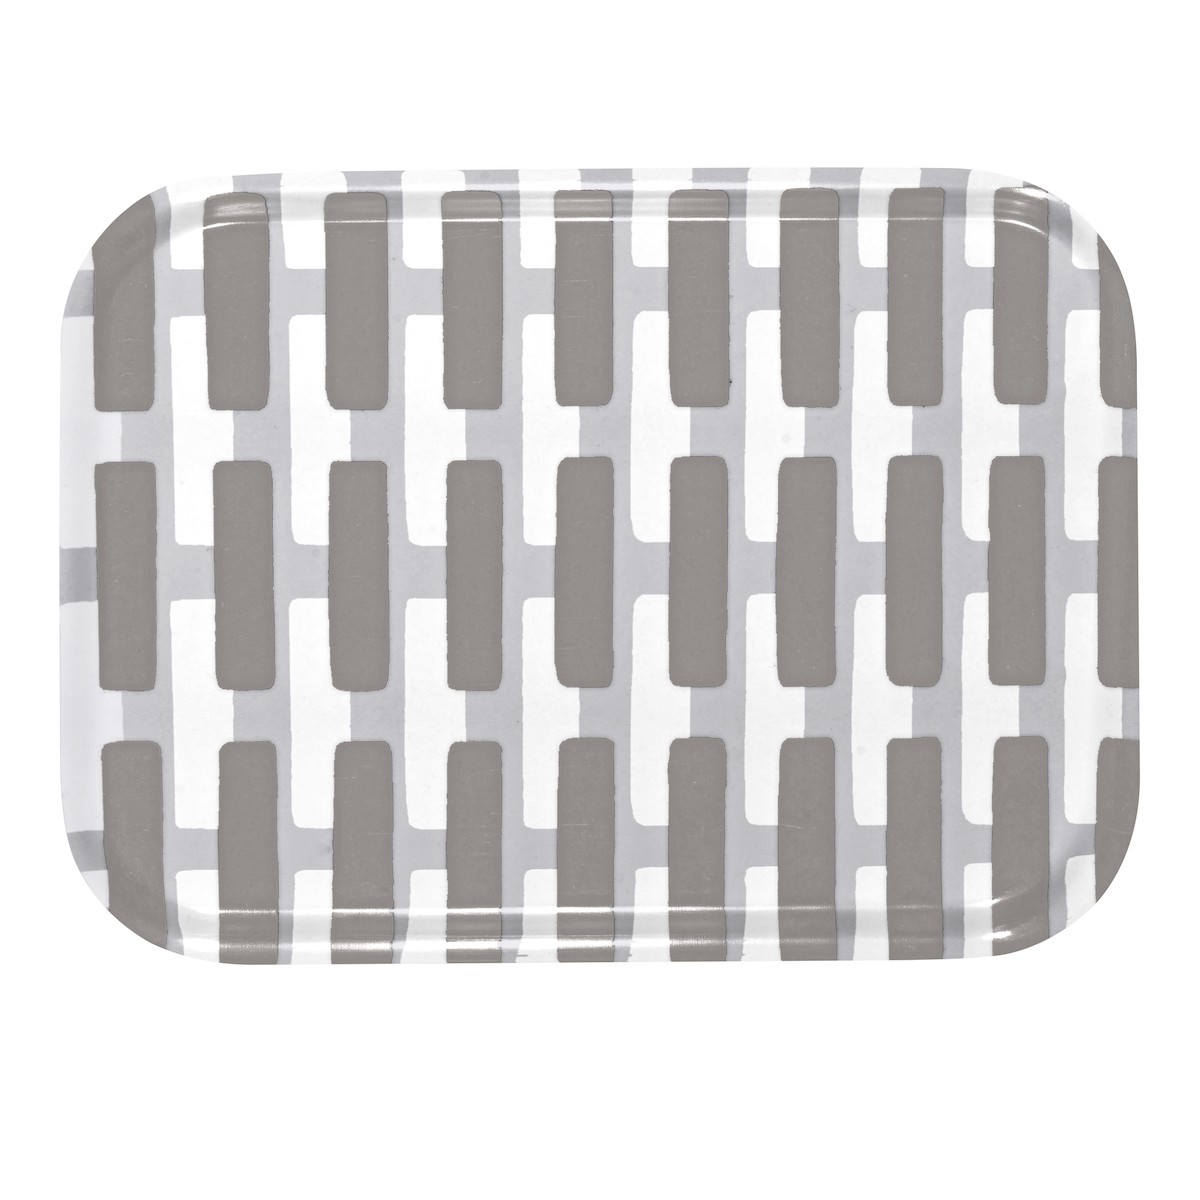 27x20cm - Siena tray, grey / light grey shadow